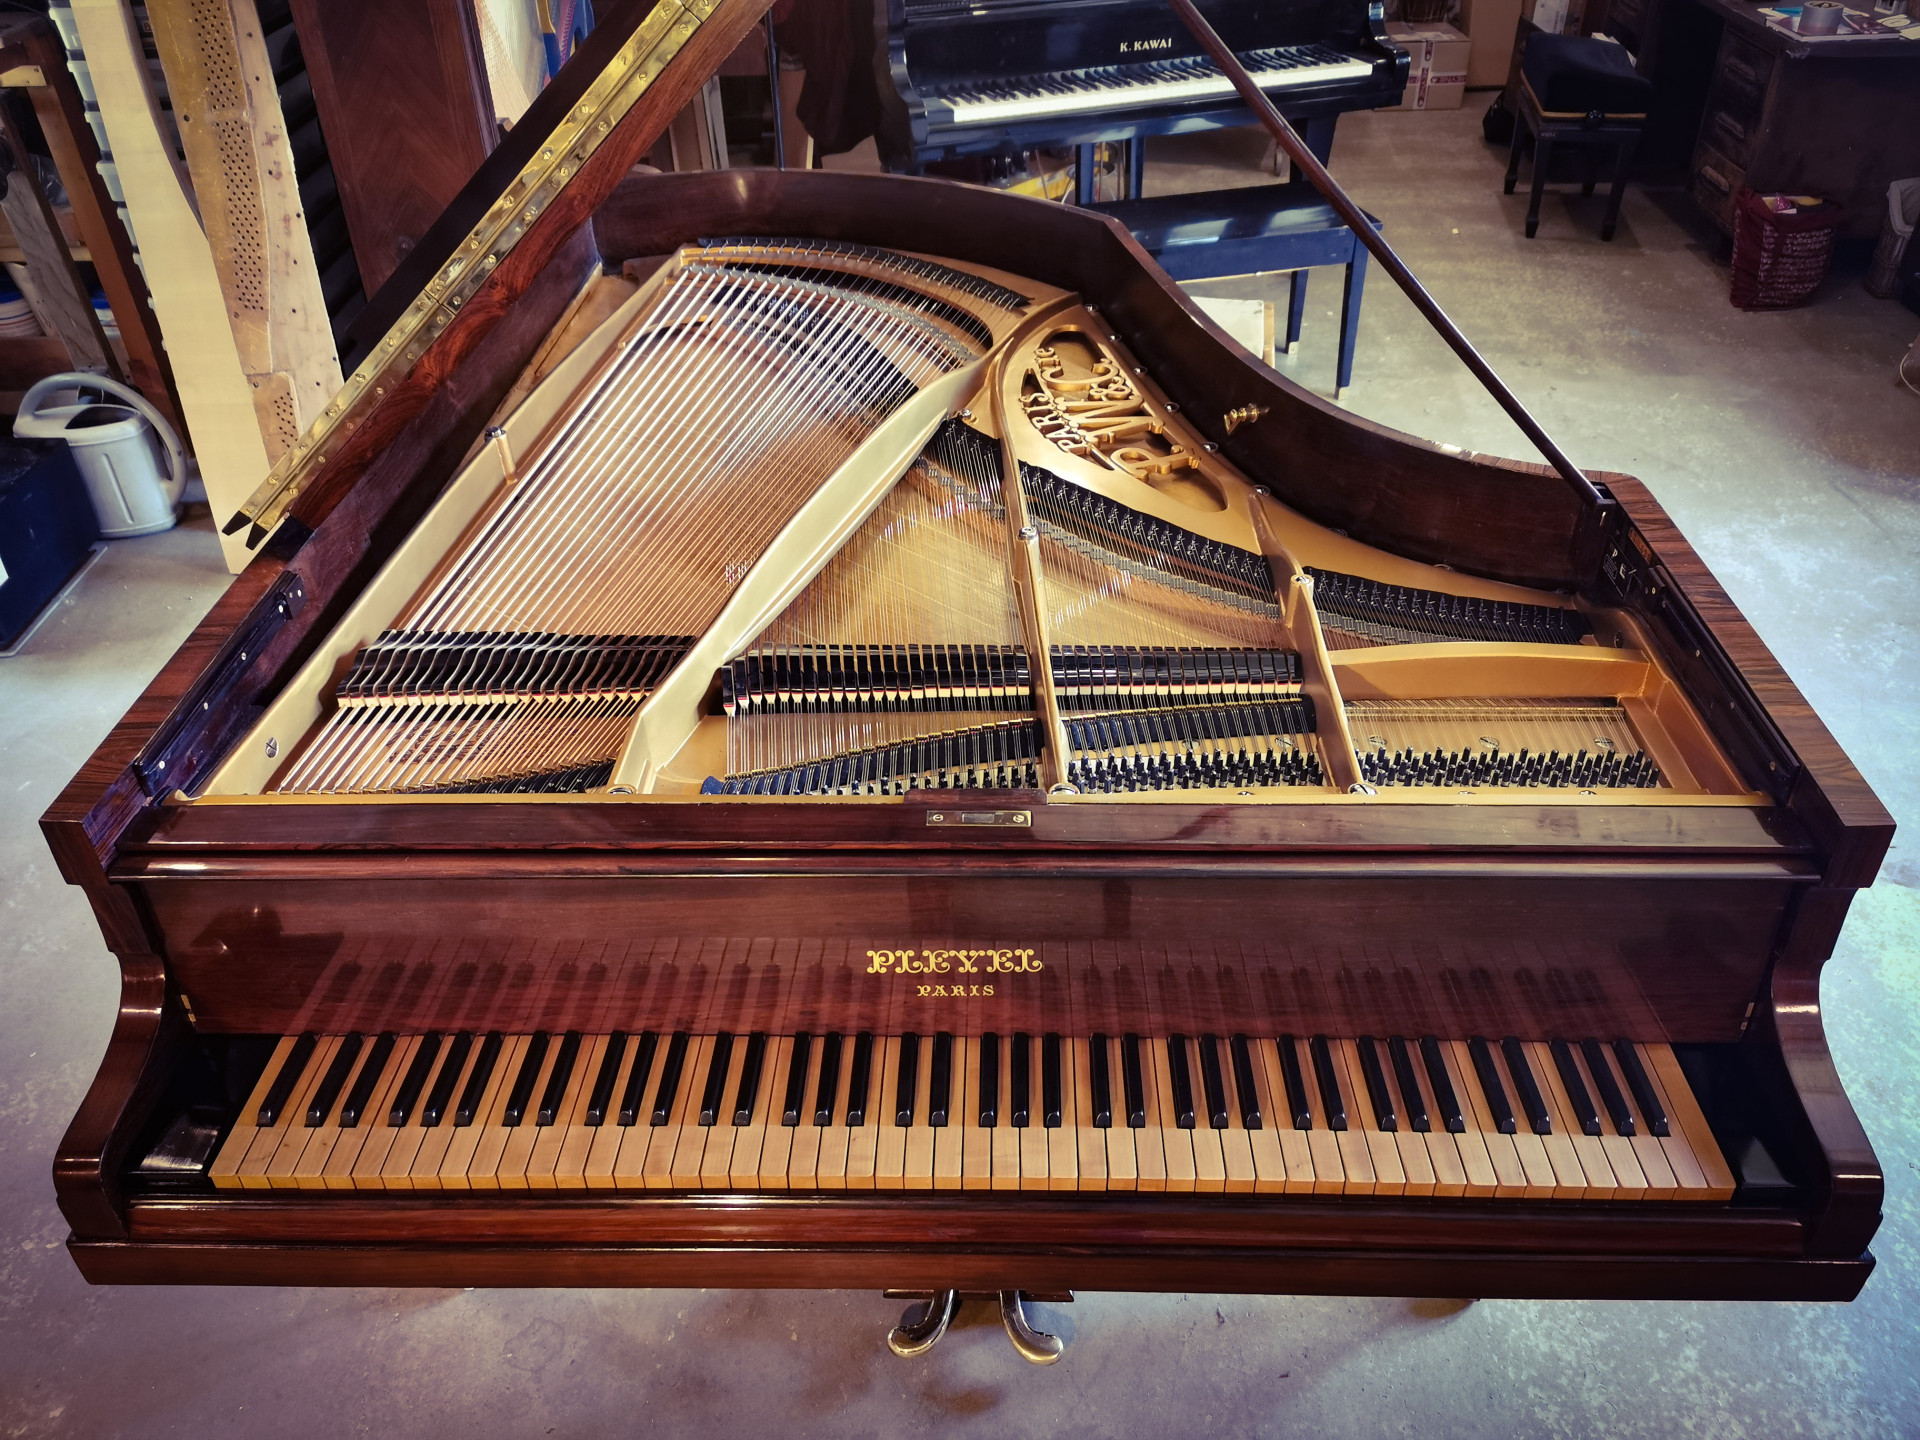 Piano restauré par Marion Lainé pour dans son atelier